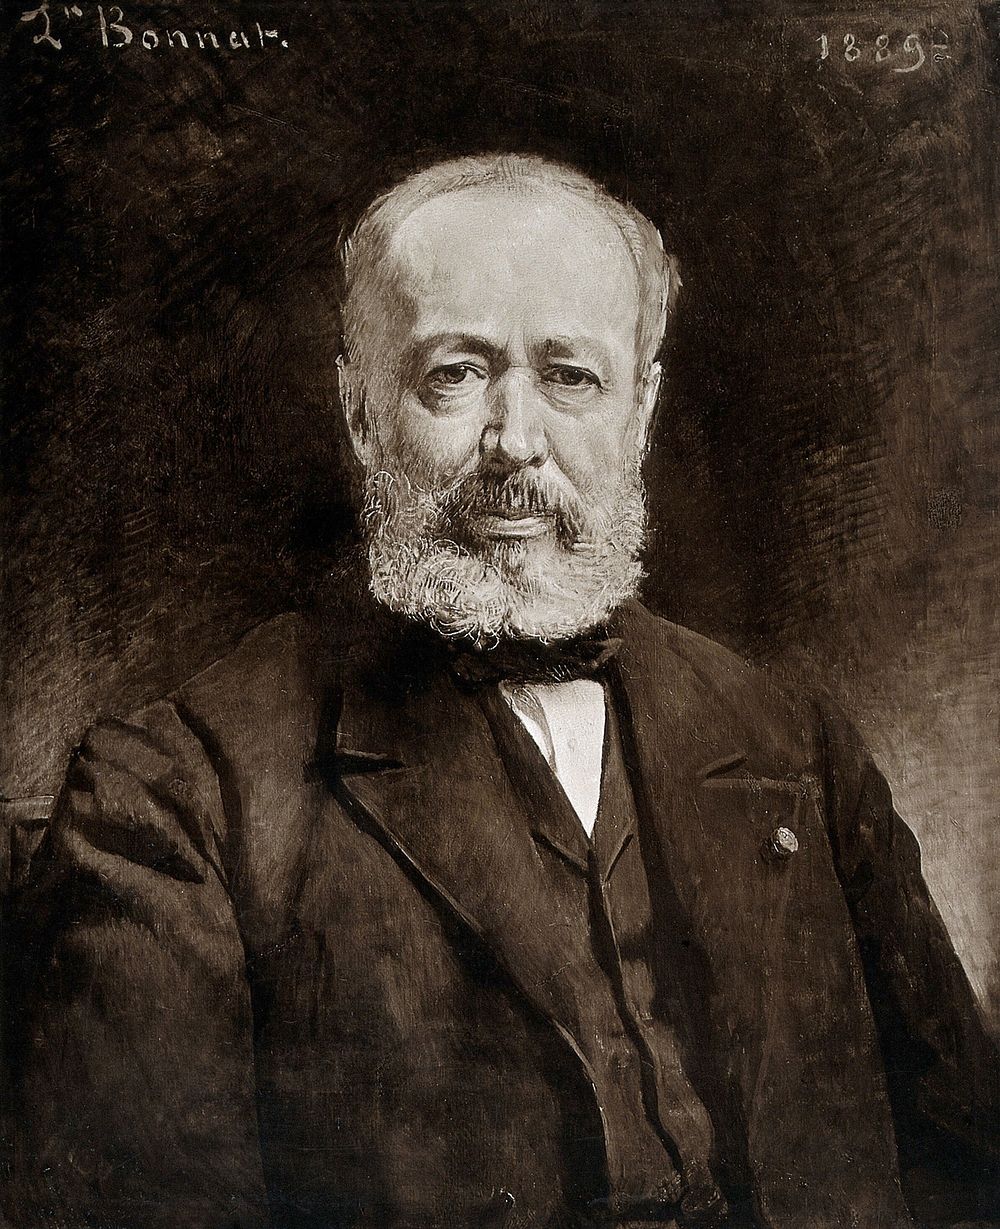 Léon Labbé. Photograph after a painting by L. Bonnat, 1889.